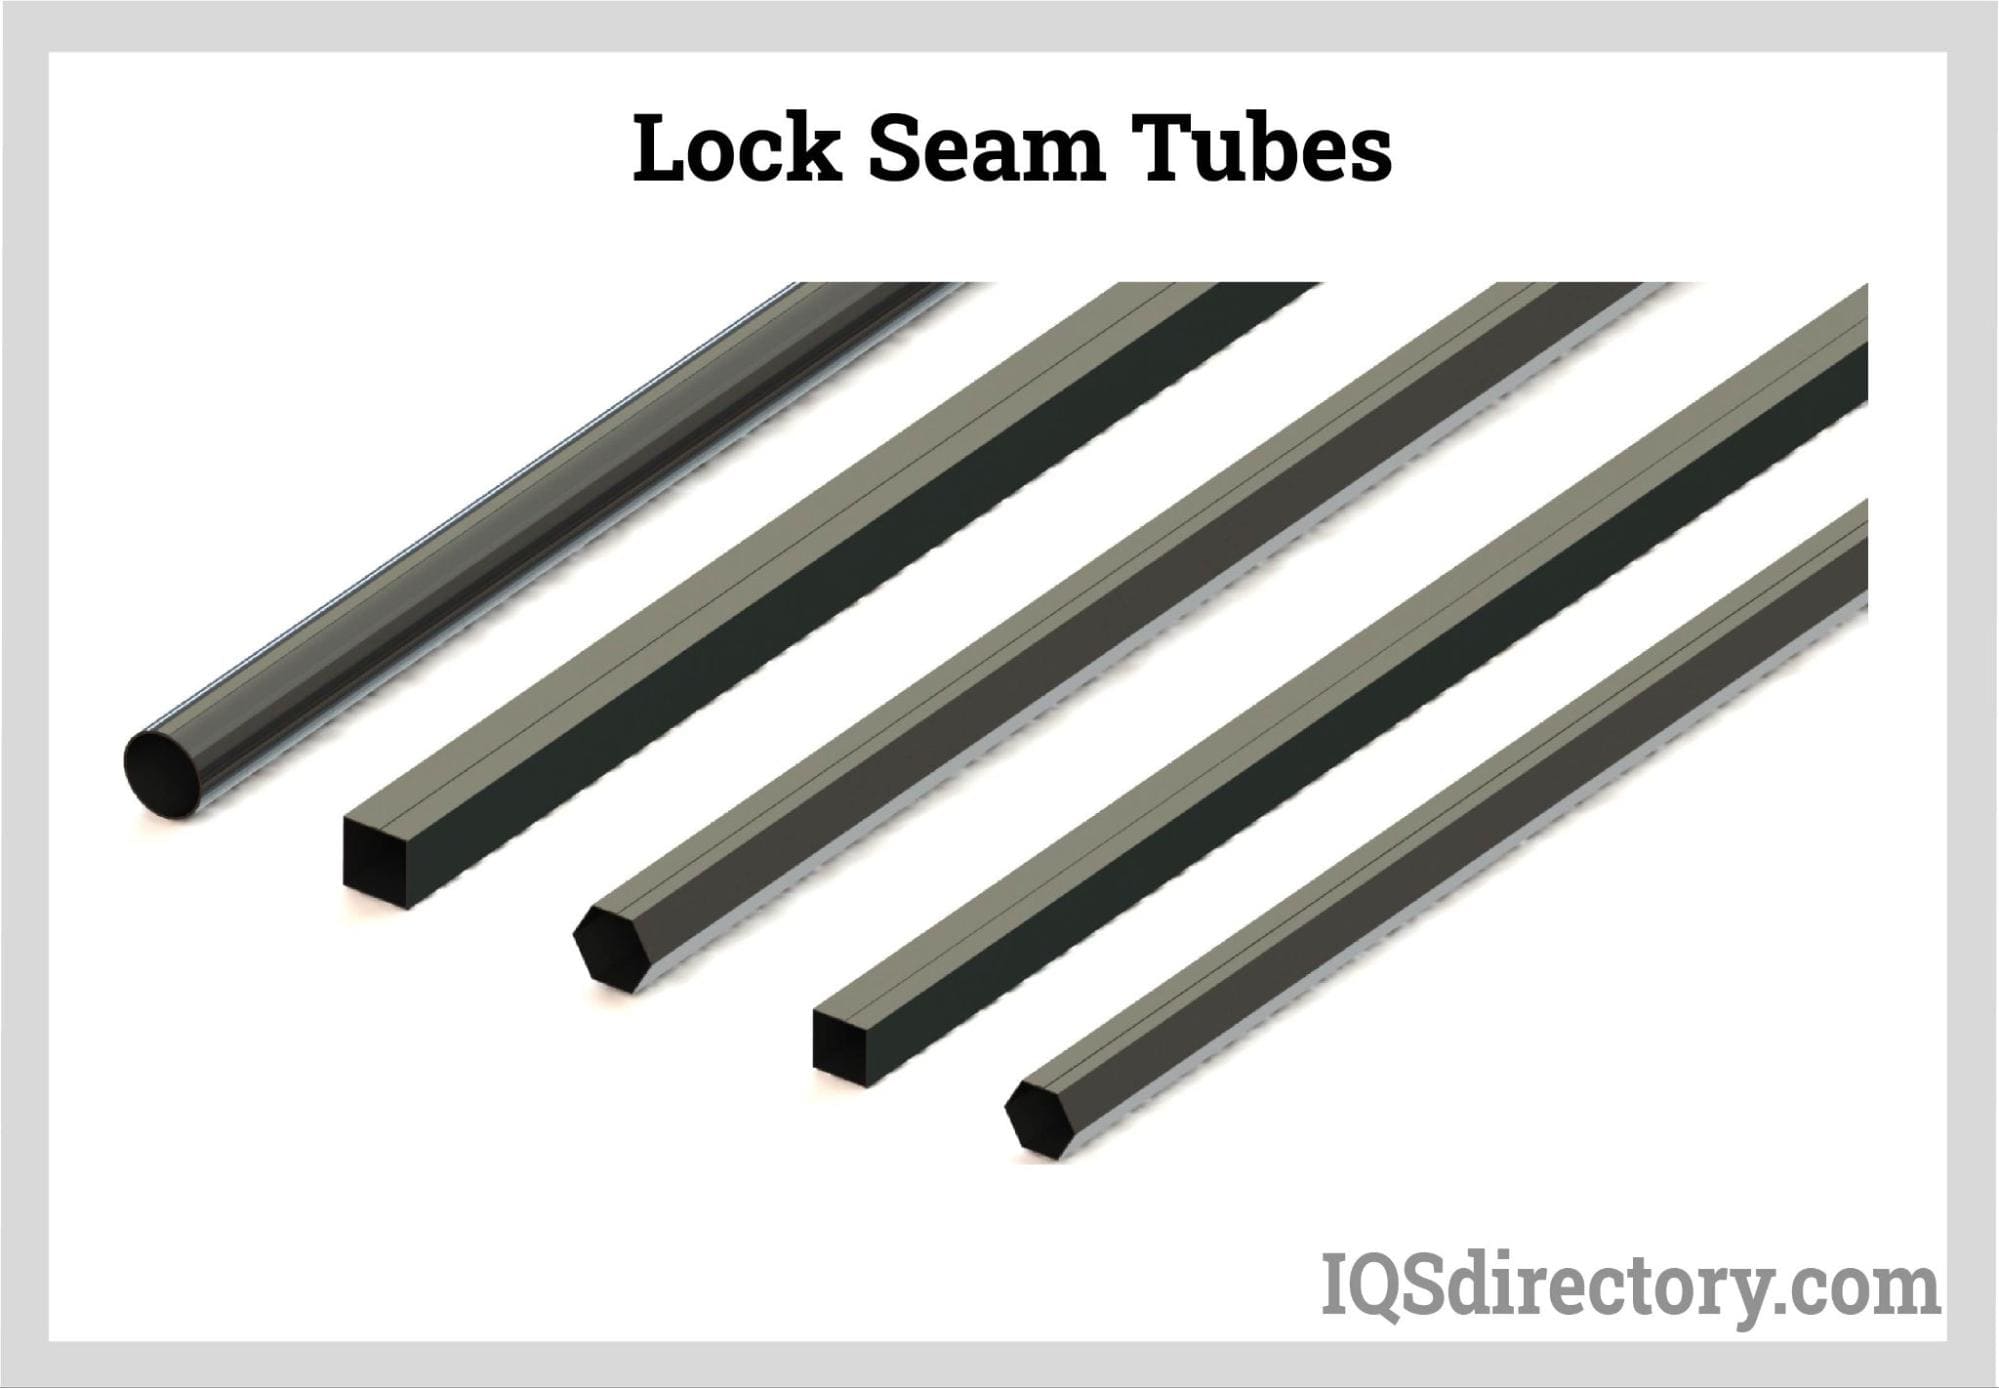 Lock Seam Tubes